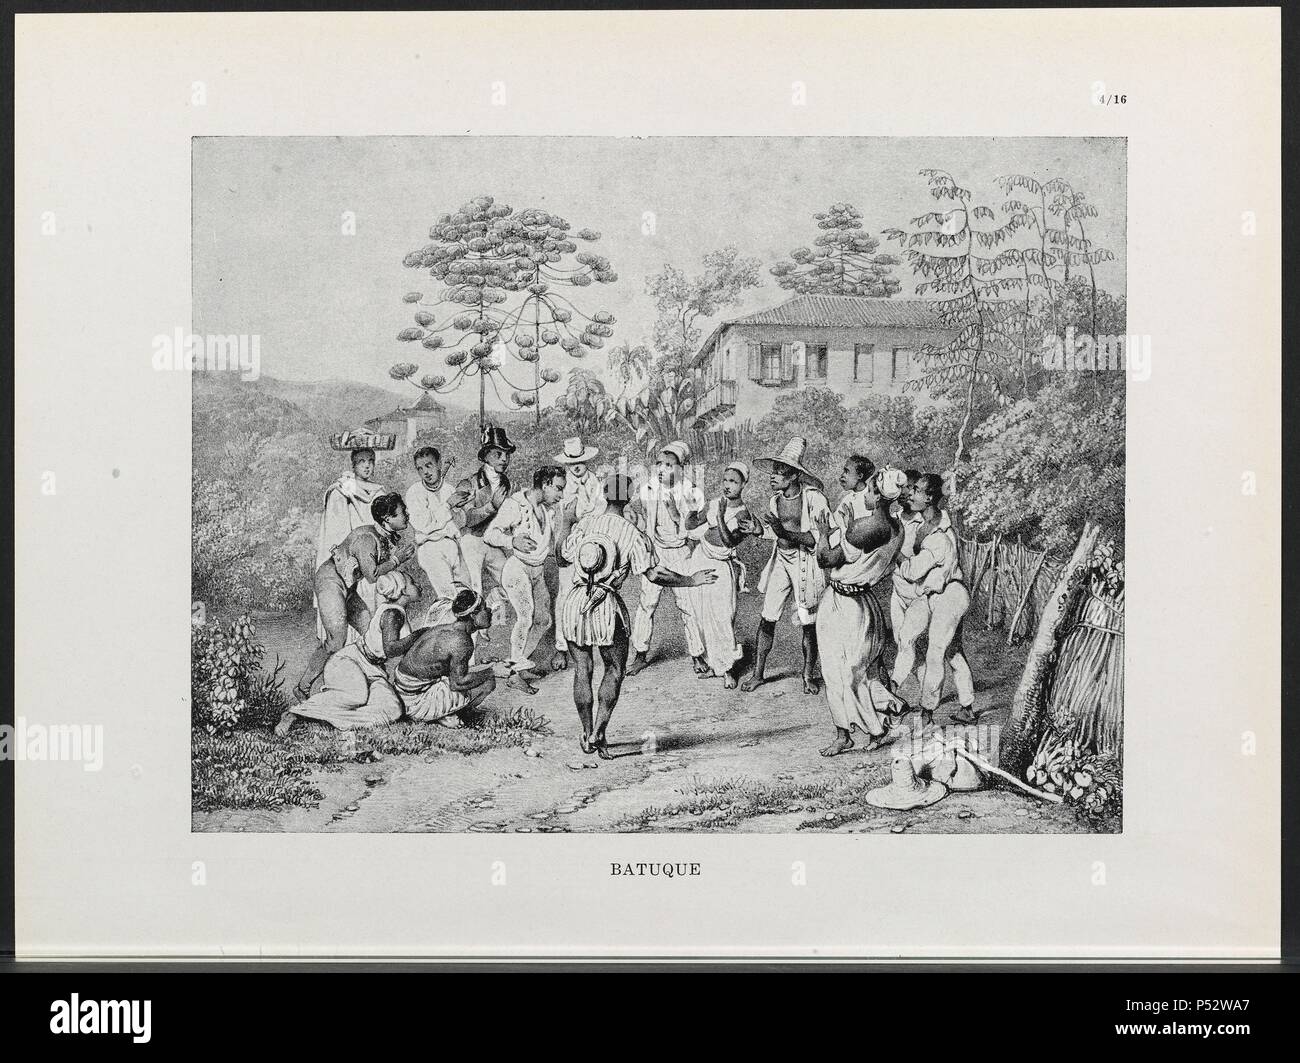 VIAGEM PINTORESCA ATRAVES DO BRASIL, BATUQUE, LAMINA 95, 1835. Author: Johann Moritz Rugendas (1802-1858). Stock Photo